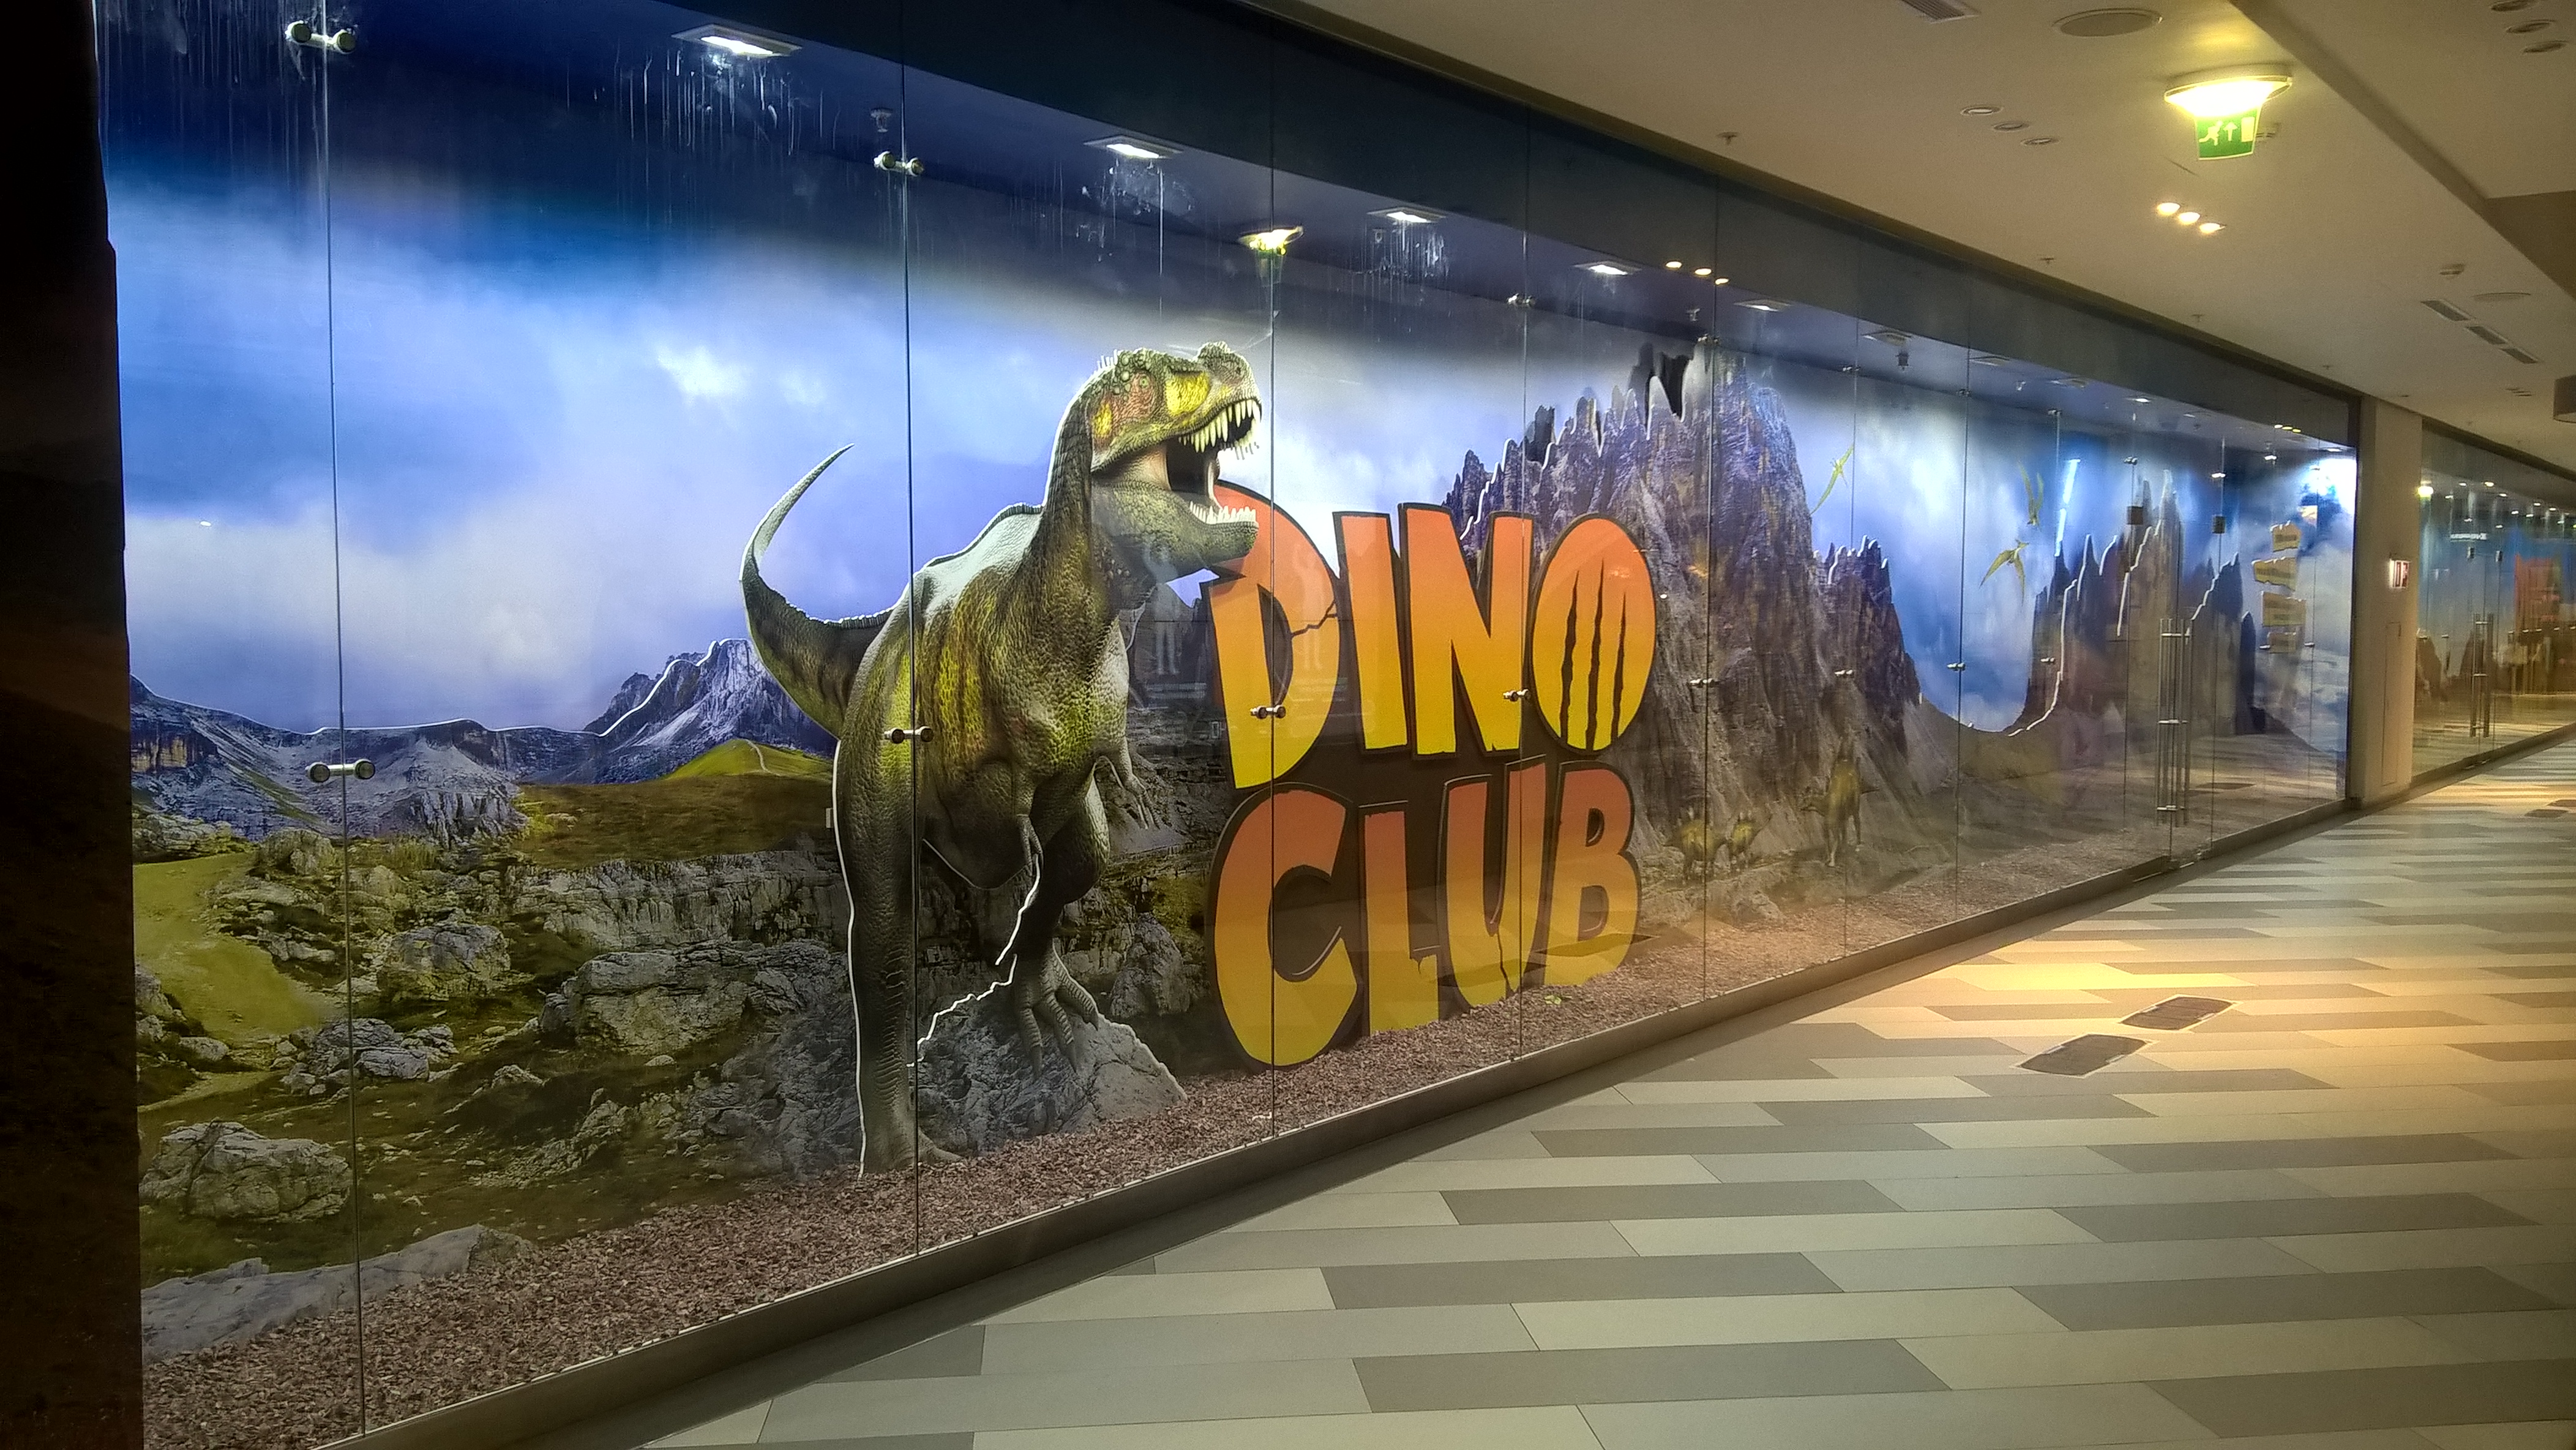 DinoClub, Центральный Детский Магазин, 2016